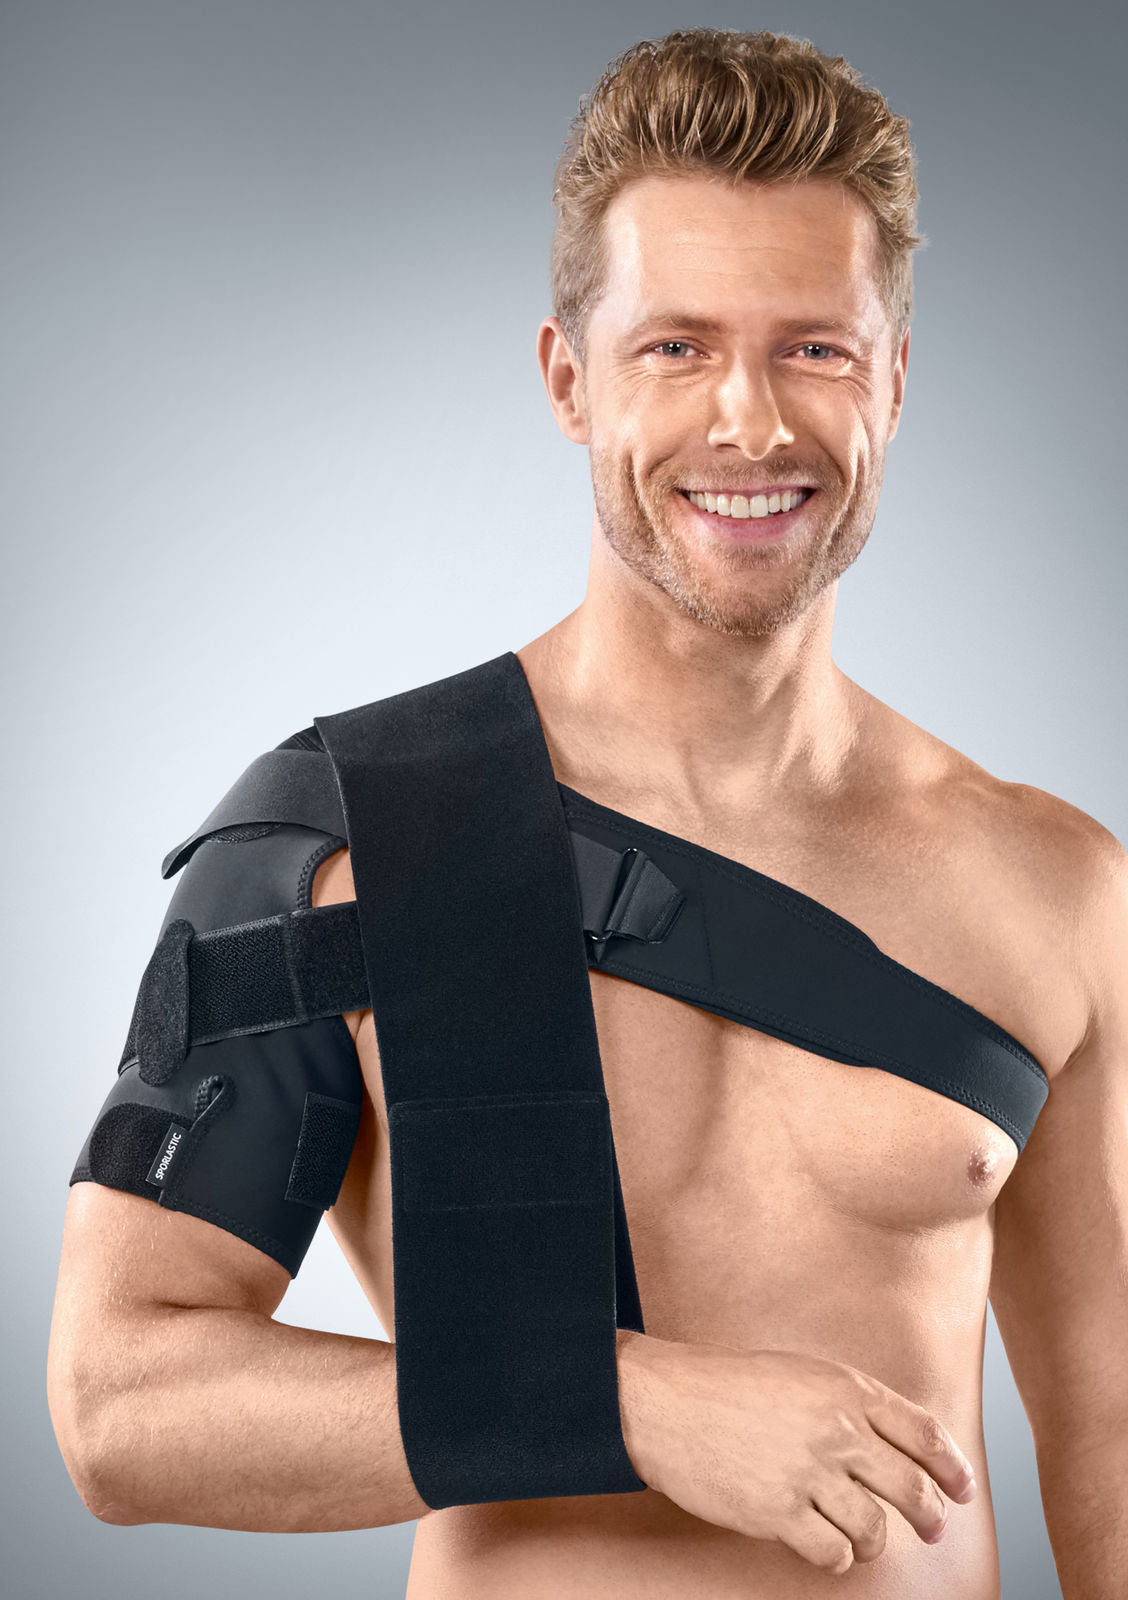  Yosoo Adjustable Shoulder Support Brace, Strap Sport